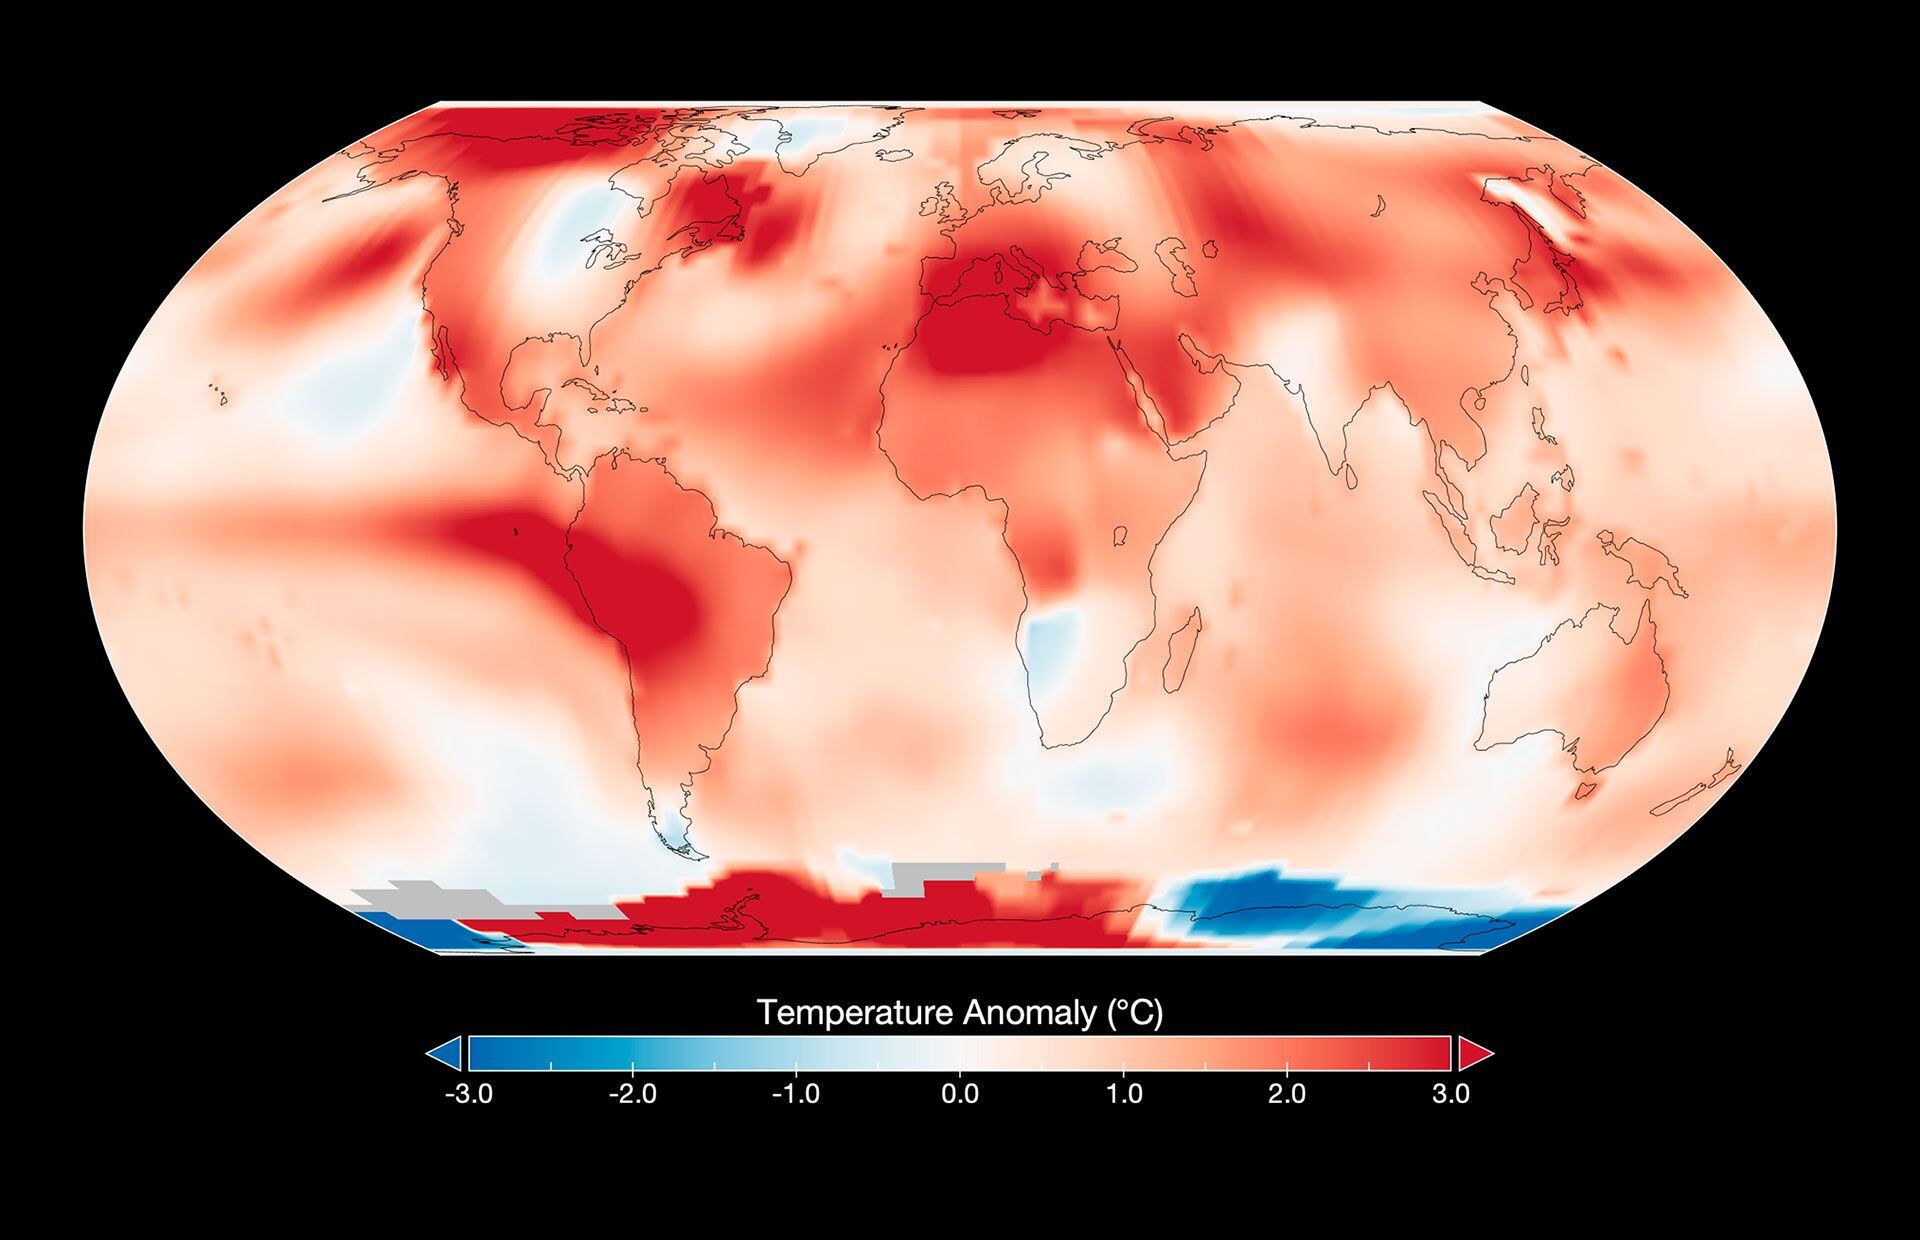 Hay una tendencia alarmante y es el aumento constante de temperaturas globales, agravado por fenómenos como El Niño, que pone en jaque la estabilidad del planeta